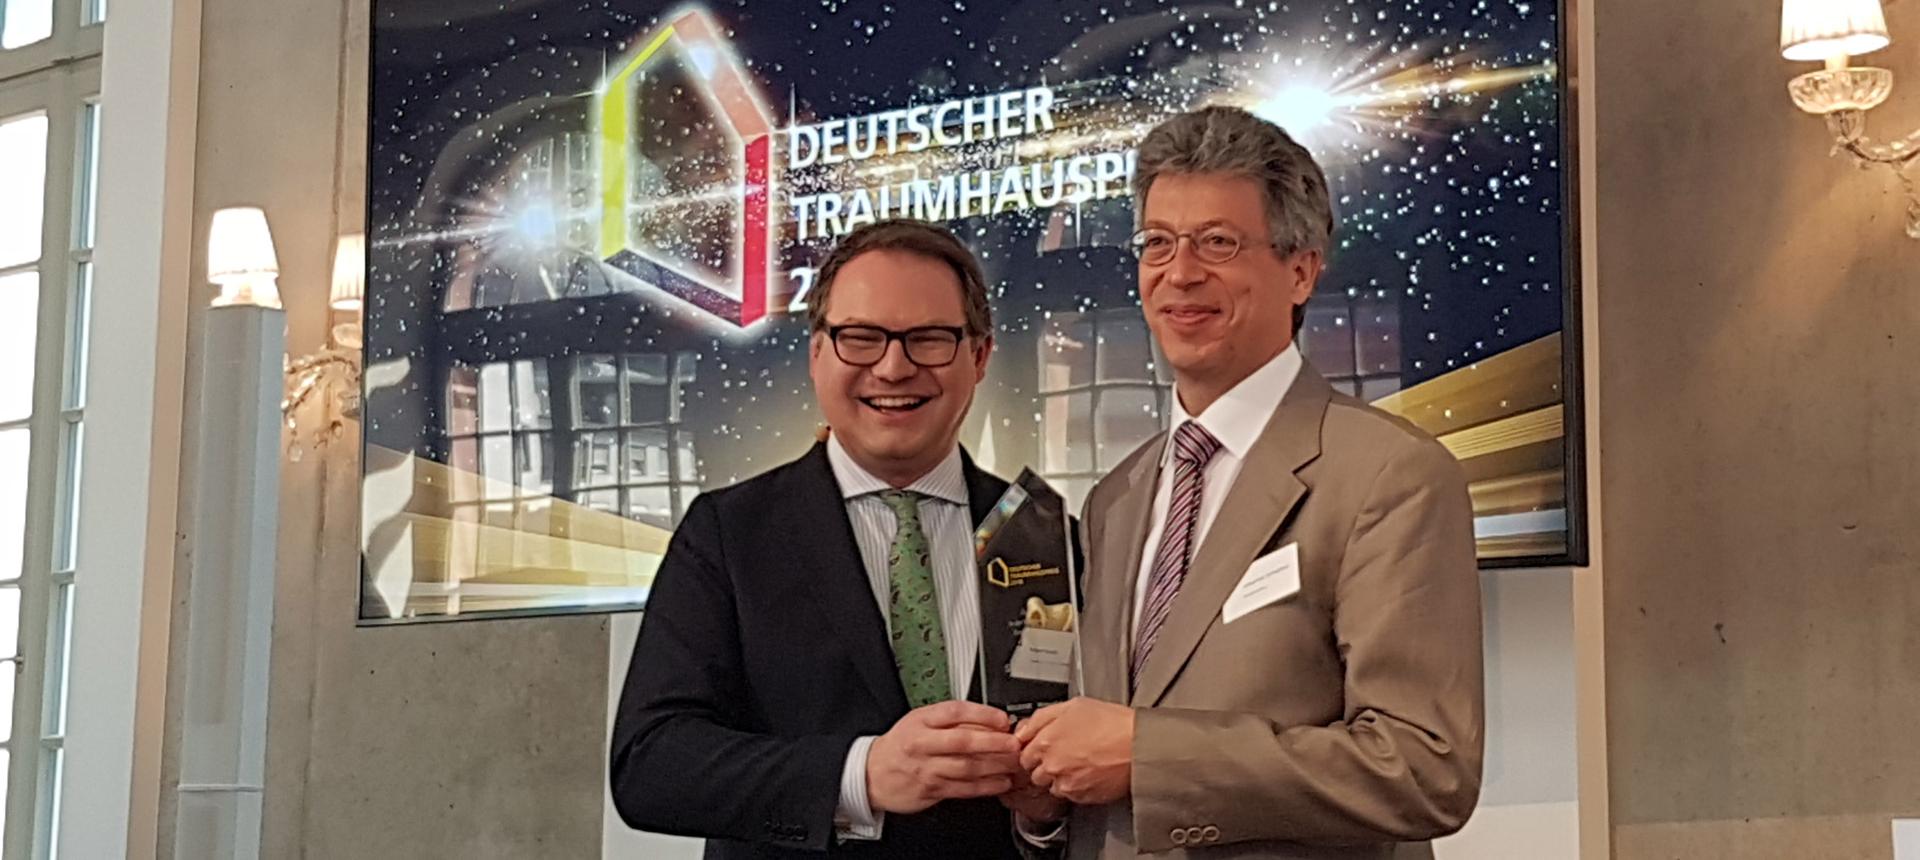 Deutscher Traumhauspreis 2018